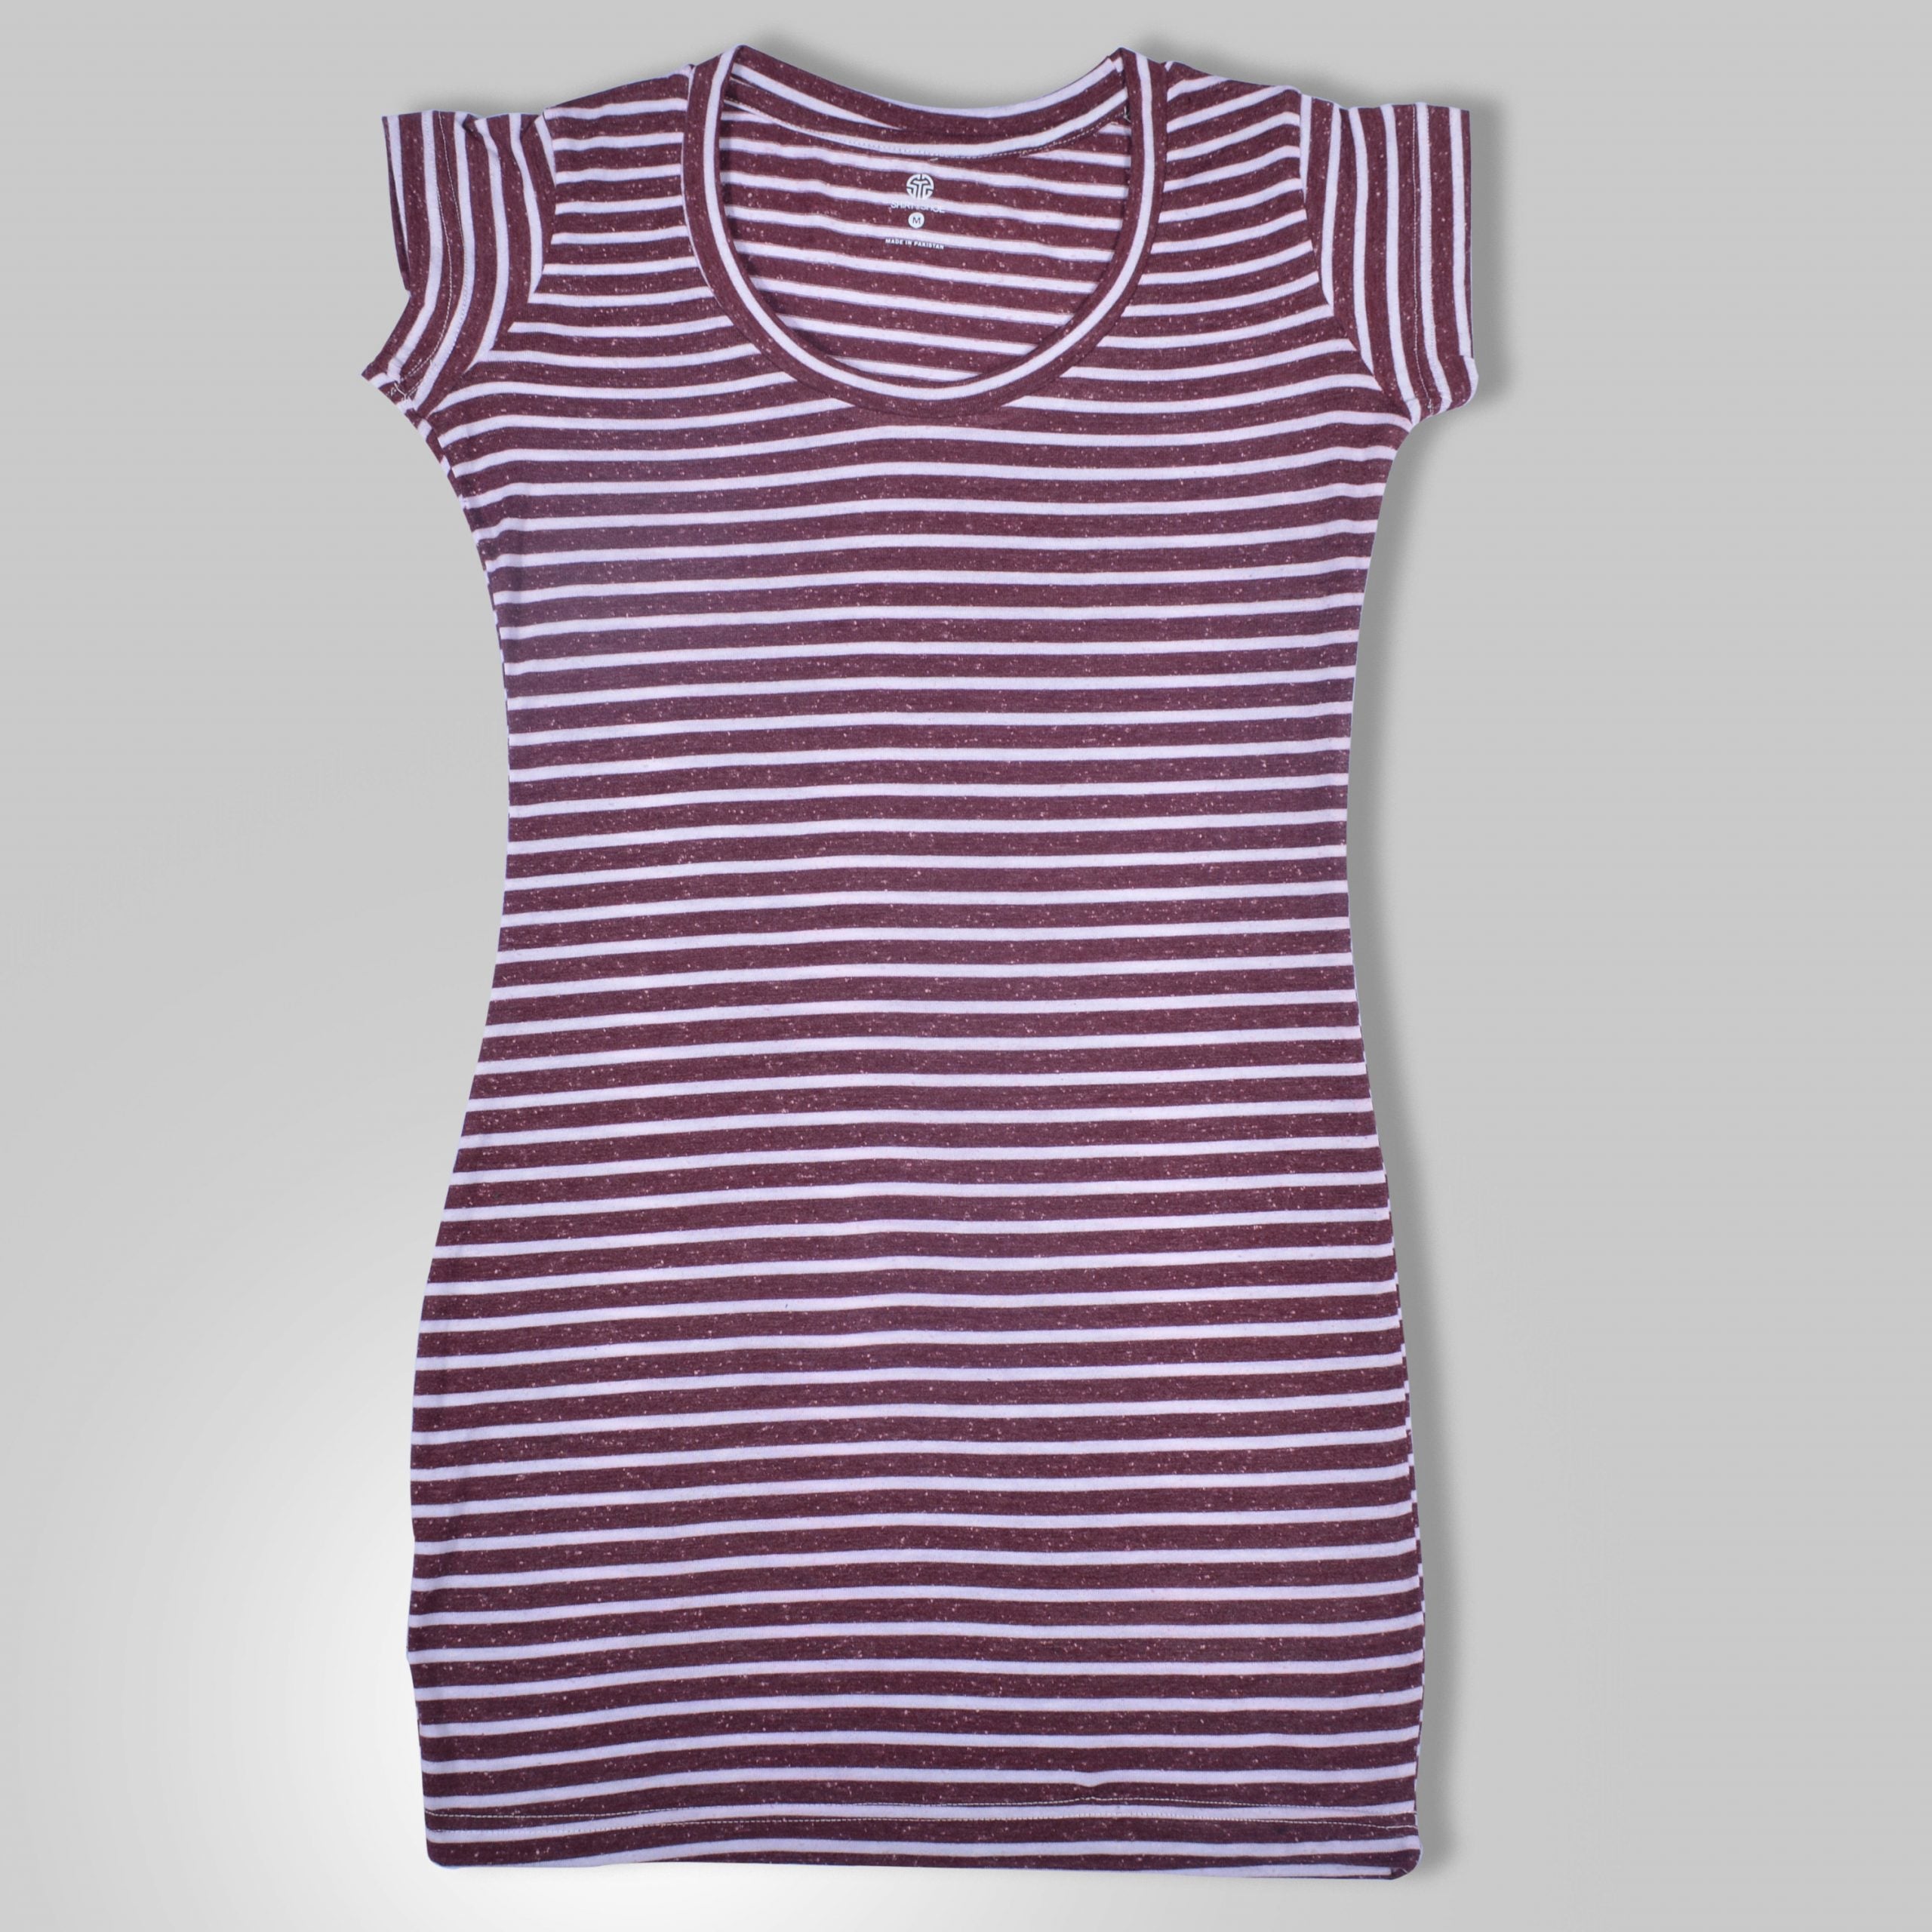 Cap sleeves Lining Ladies T-Shirt - Code 15